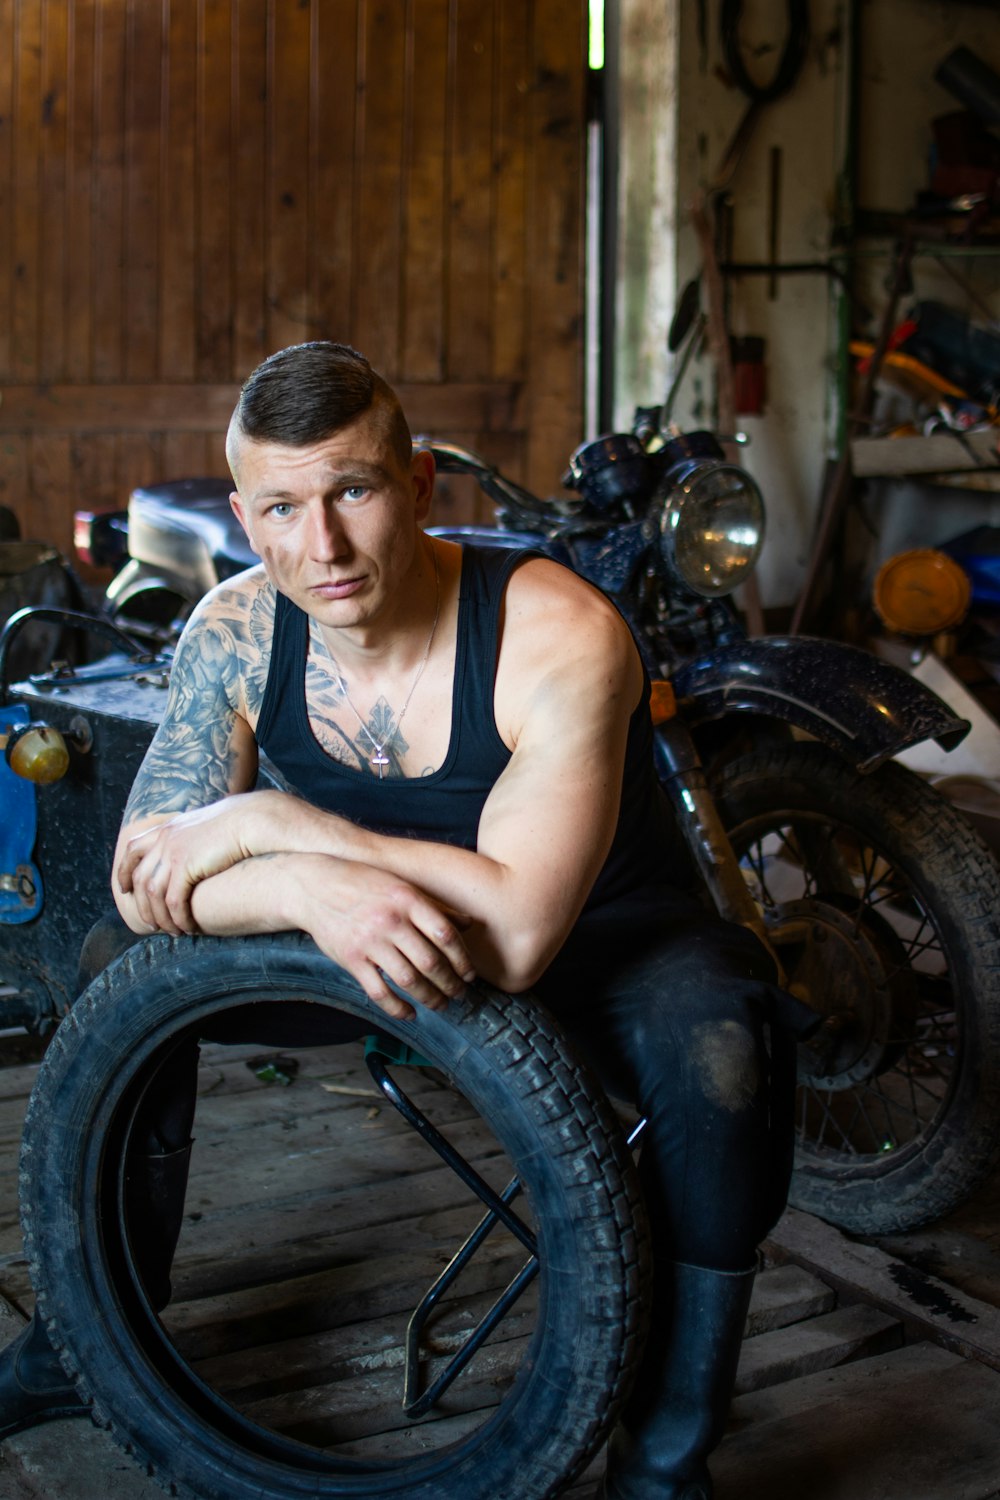 Mann in schwarzem Tanktop sitzt auf Motorrad